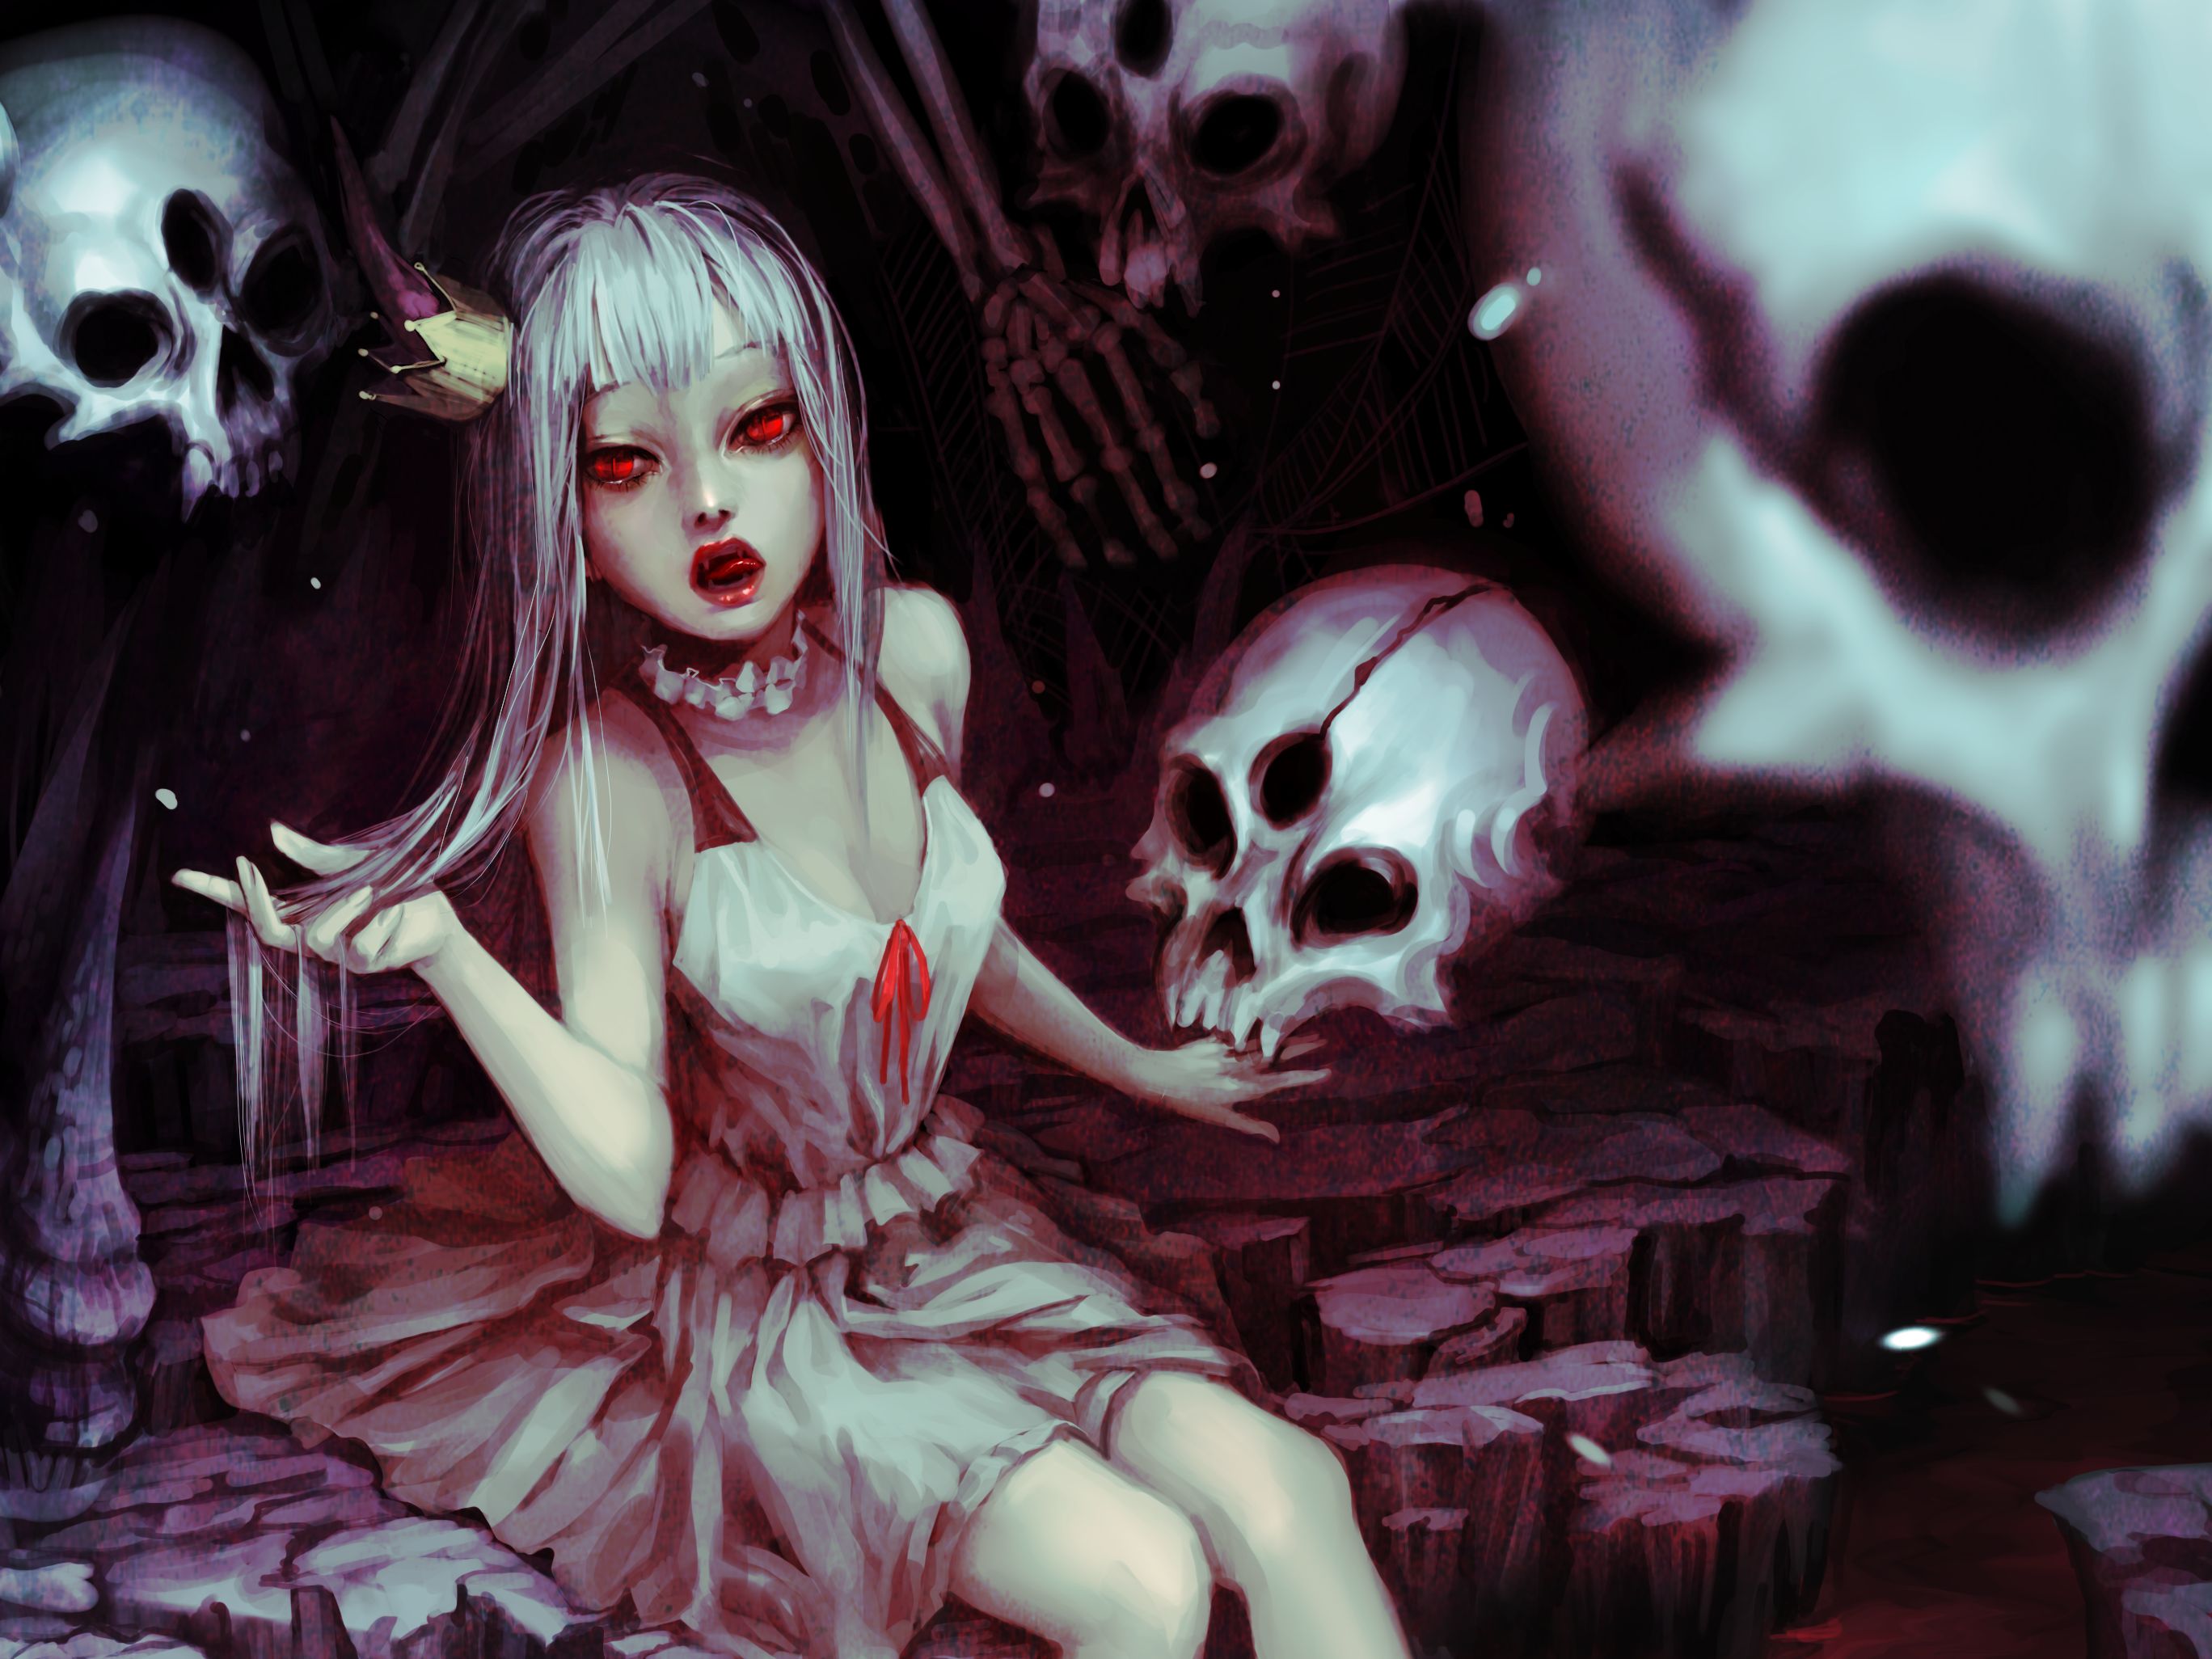 Vampire anime girl HD wallpapers | Pxfuel